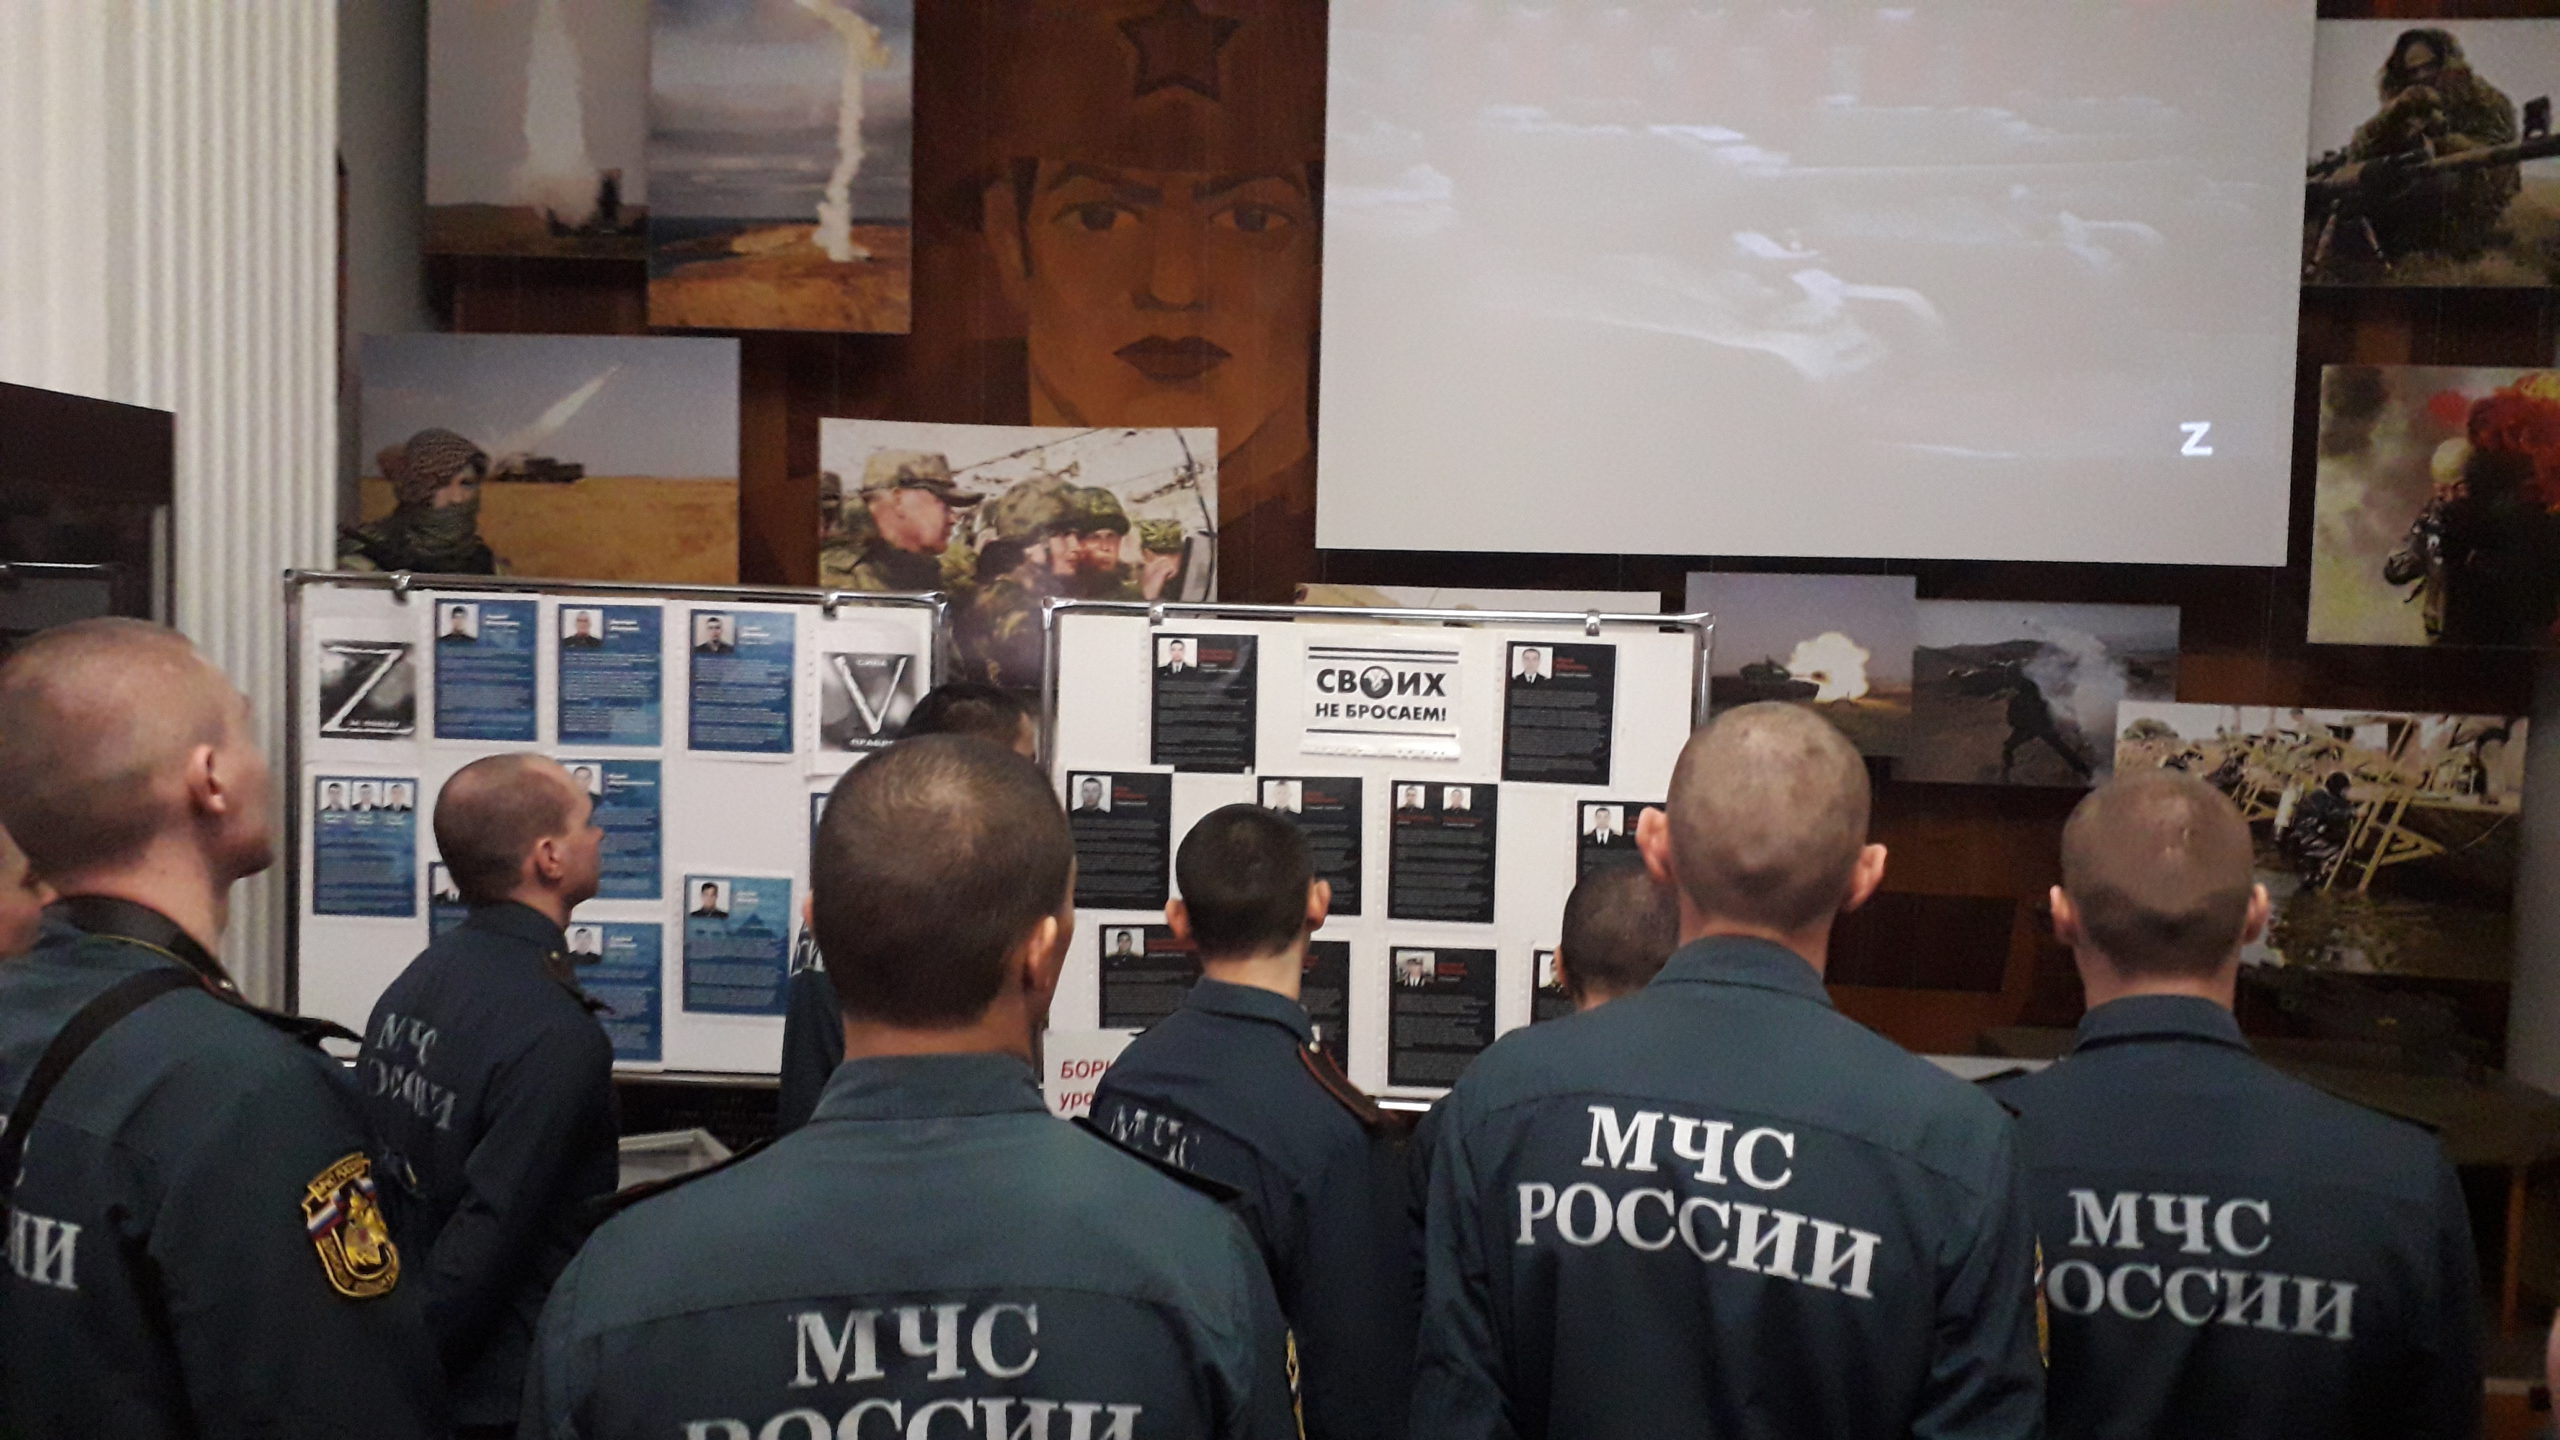 Вы сейчас просматриваете Тематический видеолекторий «Zа братьев! К победе!», в поддержку военной спецоперации России по денацификации и демилитаризации Украины.